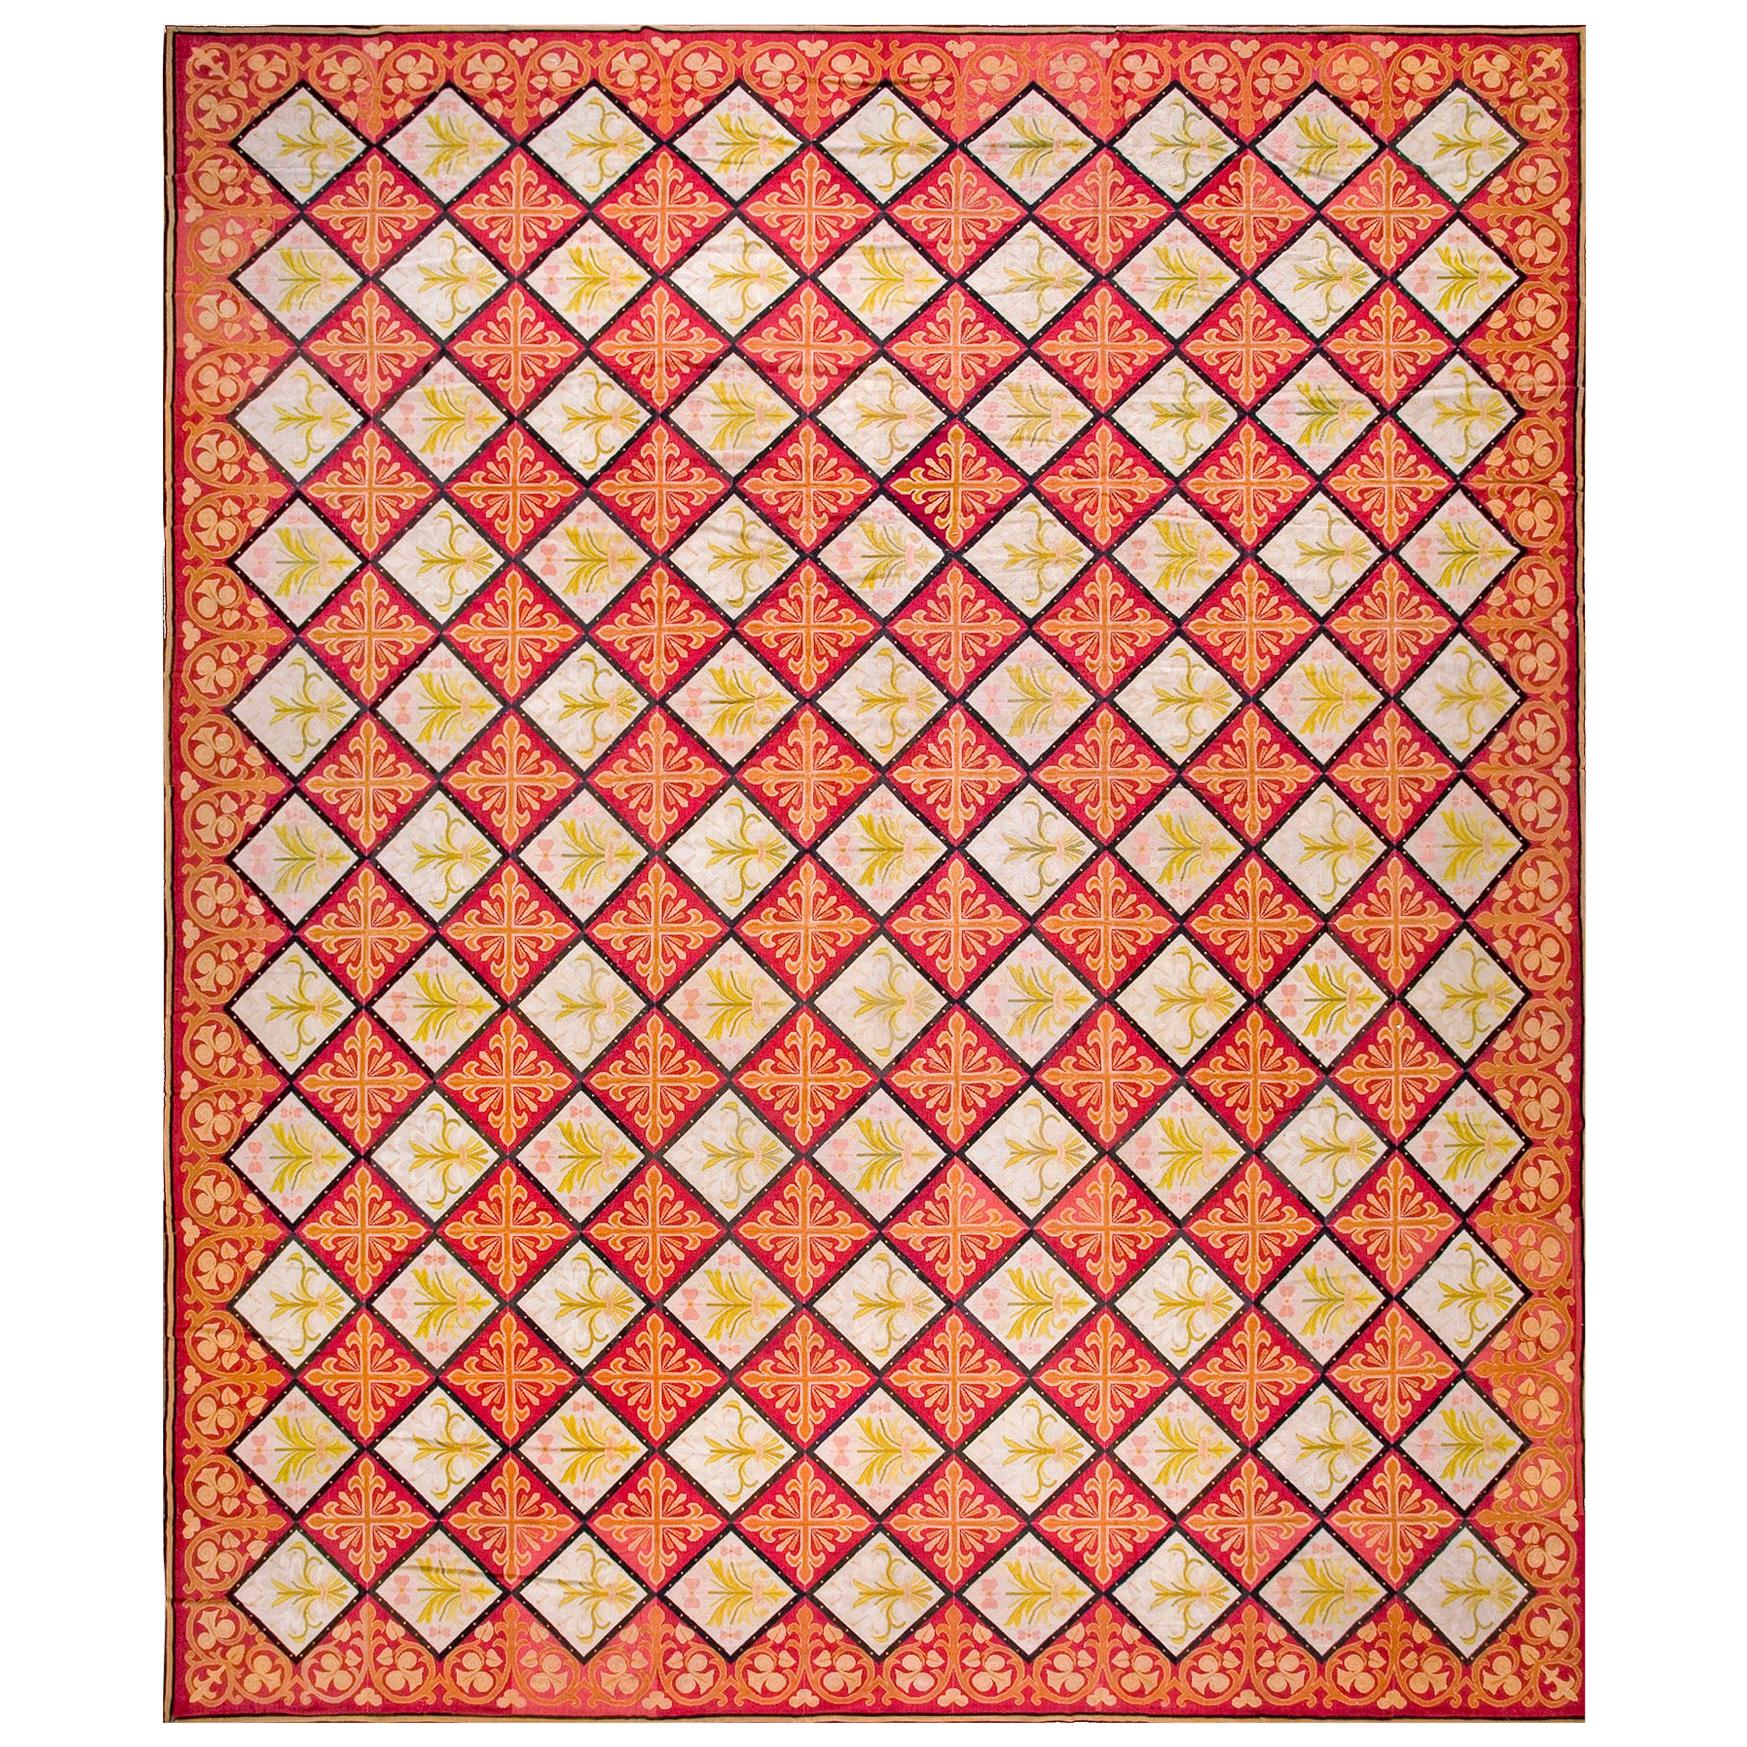 Französischer Gobelinstickerei-Teppich des 19. Jahrhunderts ( 13'8" x 16'10" - 417 x 513")